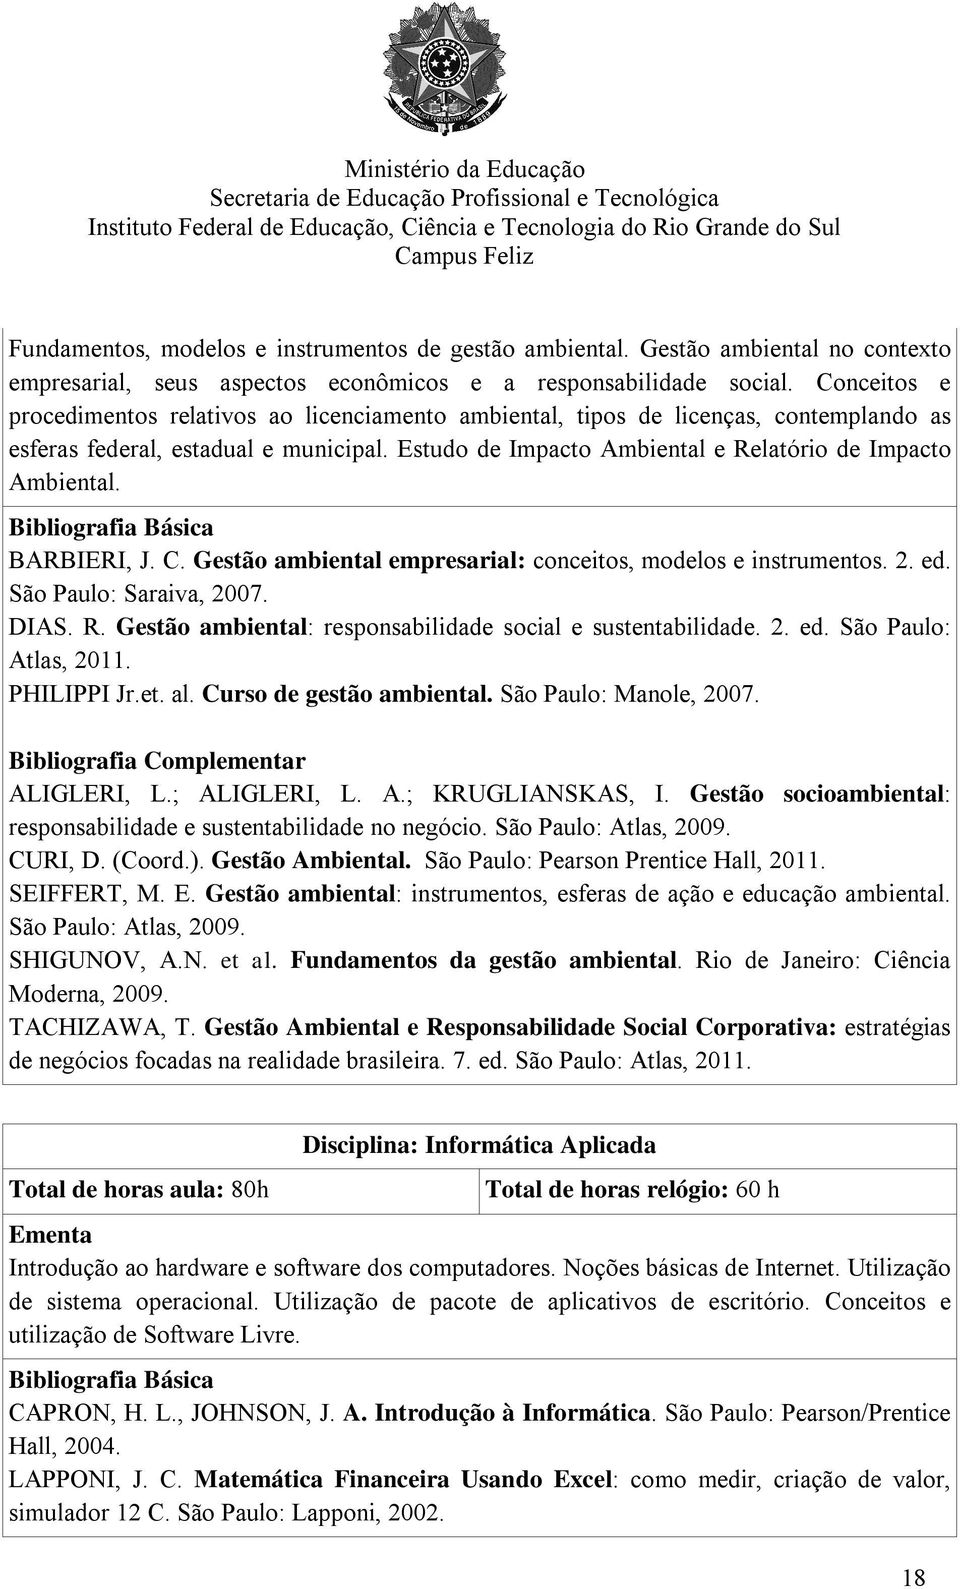 Bibliografia Básica BARBIERI, J. C. Gestão ambiental empresarial: conceitos, modelos e instrumentos. 2. ed. São Paulo: Saraiva, 2007. DIAS. R.